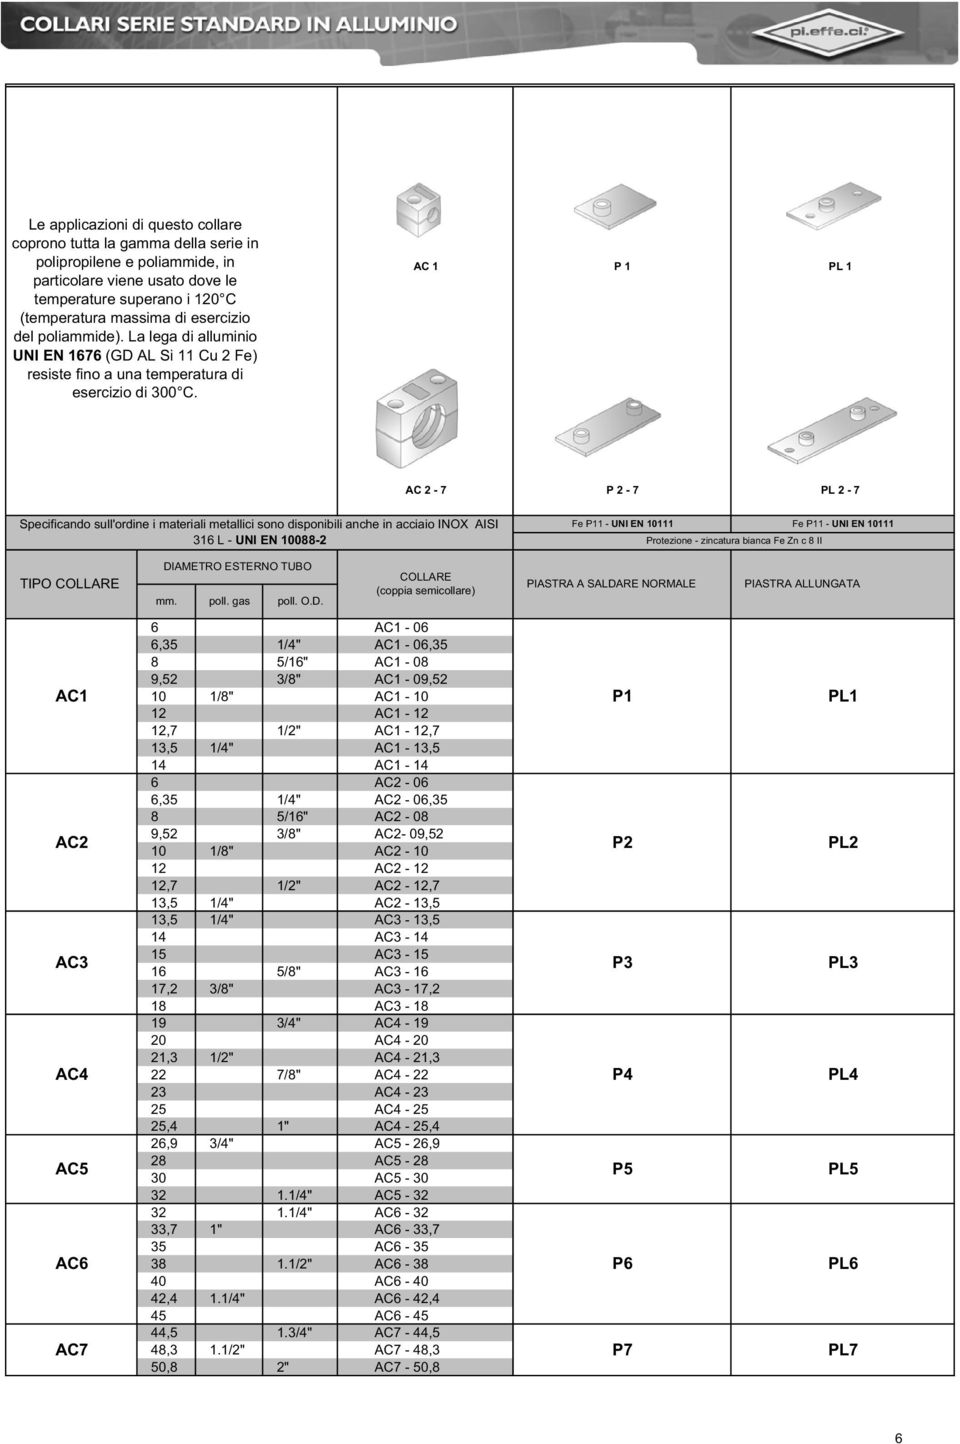 AC 1 P 1 PL 1 AC 2-7 P 2-7 PL 2-7 Specificando sull'ordine i materiali metallici sono disponibili anche in acciaio INOX AISI 316 L - UNI EN 10088-2 Fe P11 - UNI EN 10111 Protezione - zincatura bianca